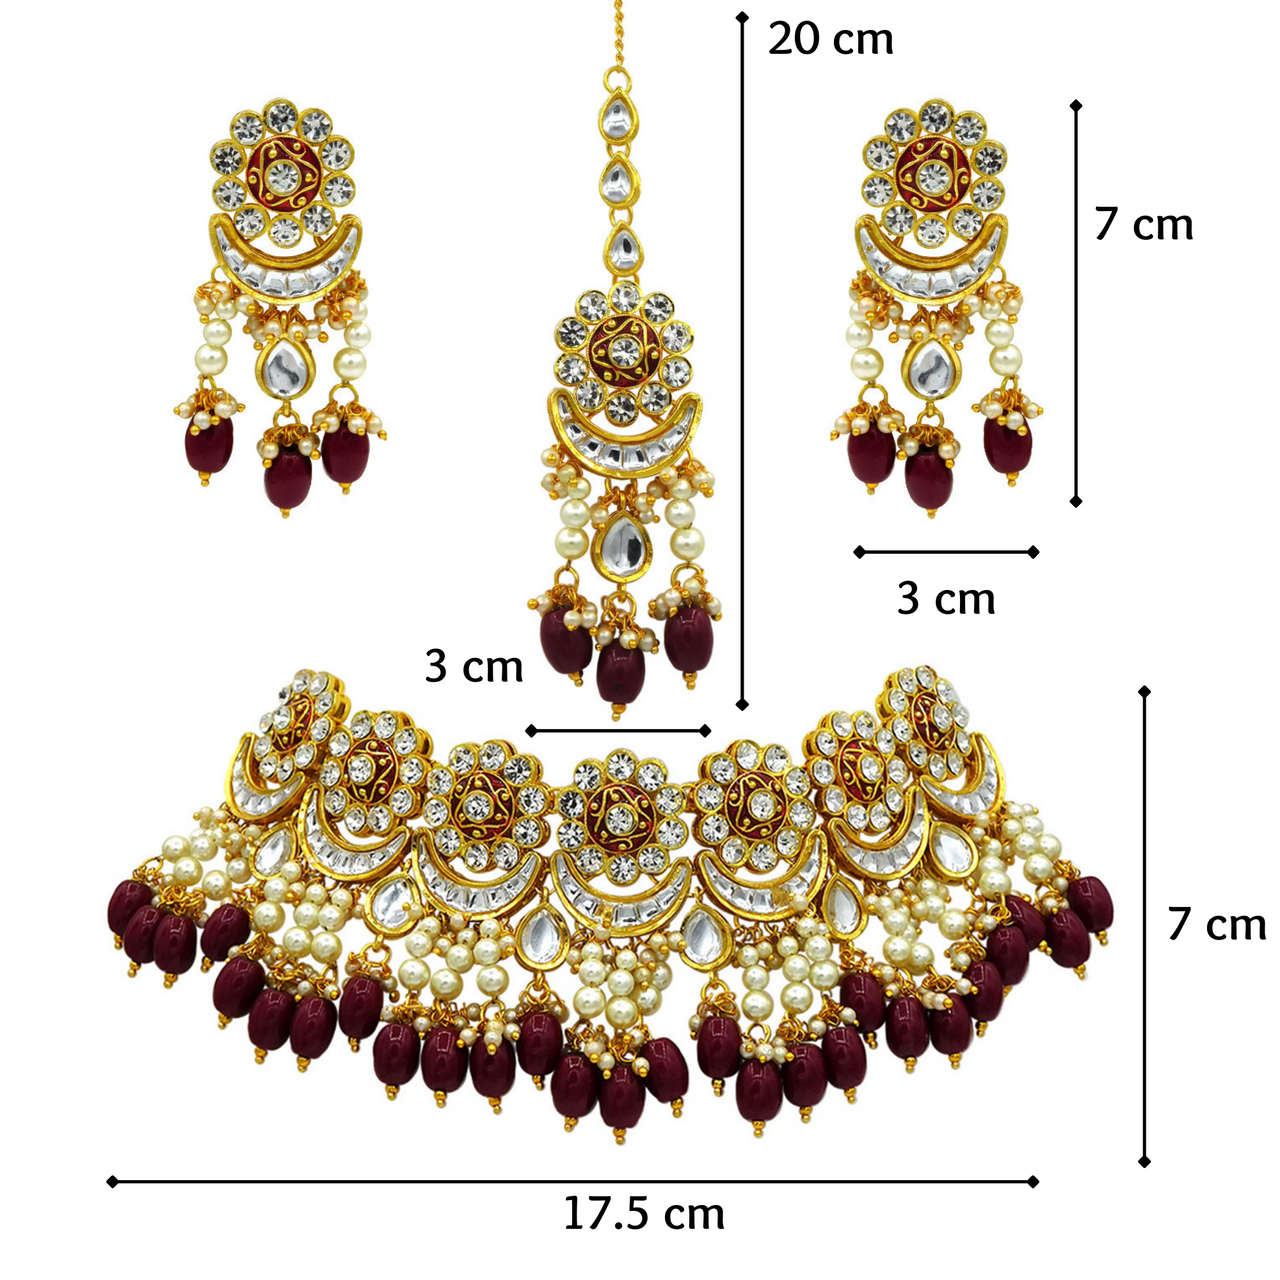 Sujwel Gold Plated Meenakari Choker Necklace Set (08-0243) - Sujwel